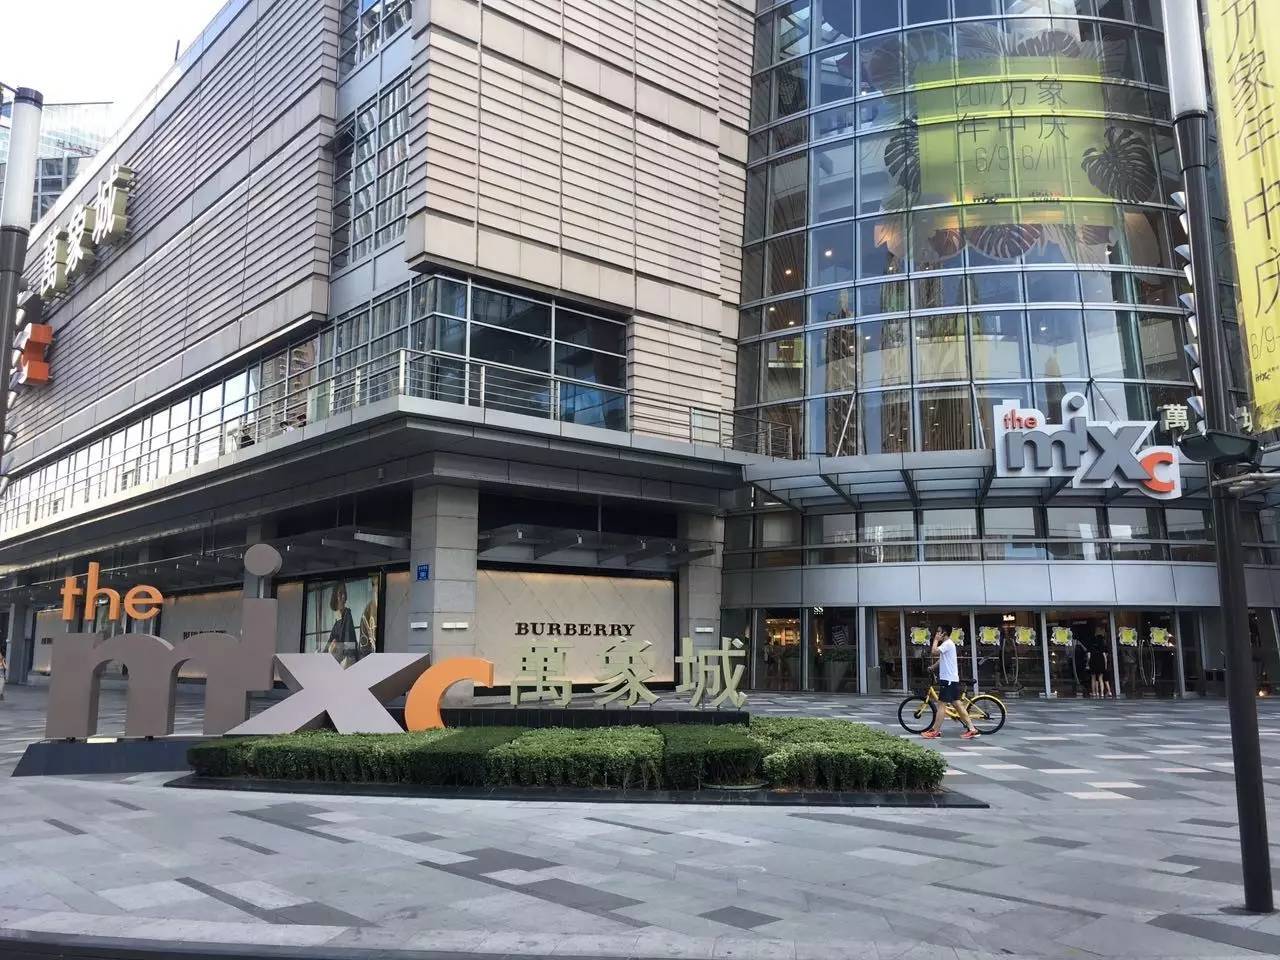 深圳万象城是华润中心的购物及娱乐中心,是深圳最大,华南最好